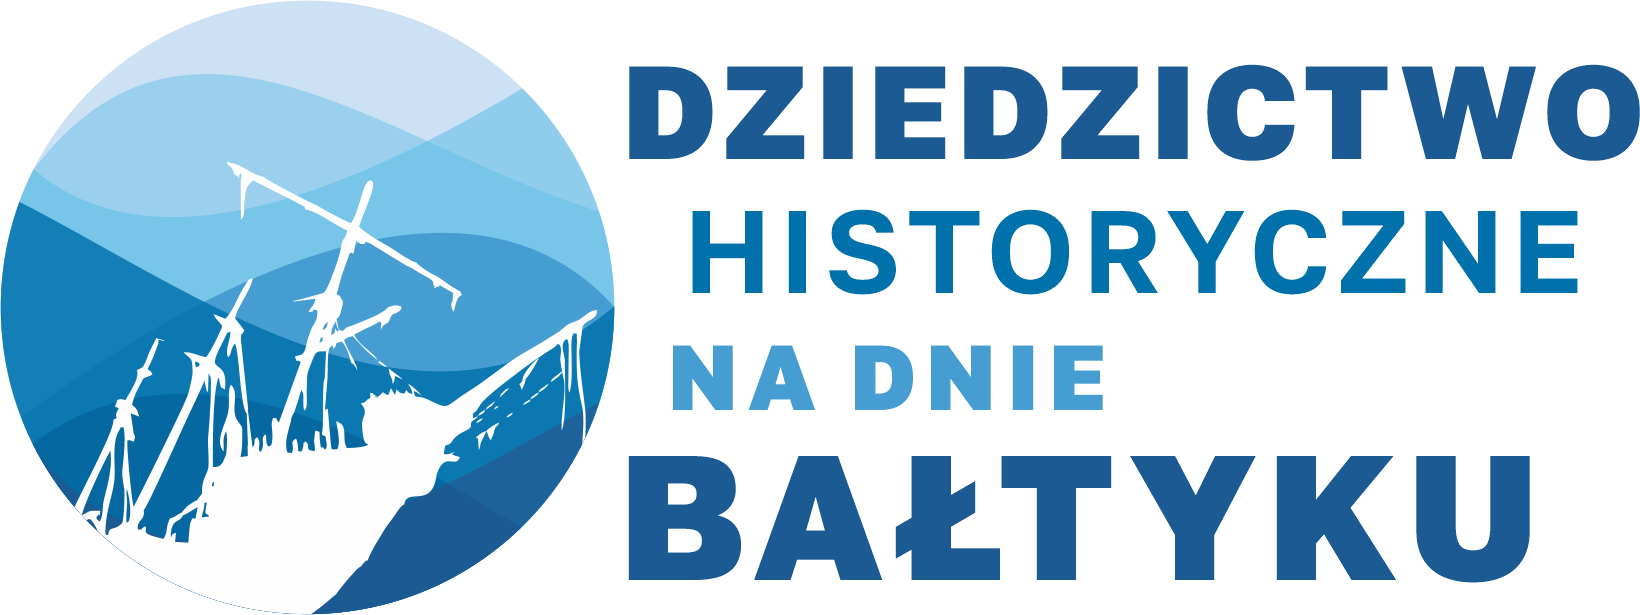 Logo projektu "Dziedzictwo historyczne na dnie Bałtyku".